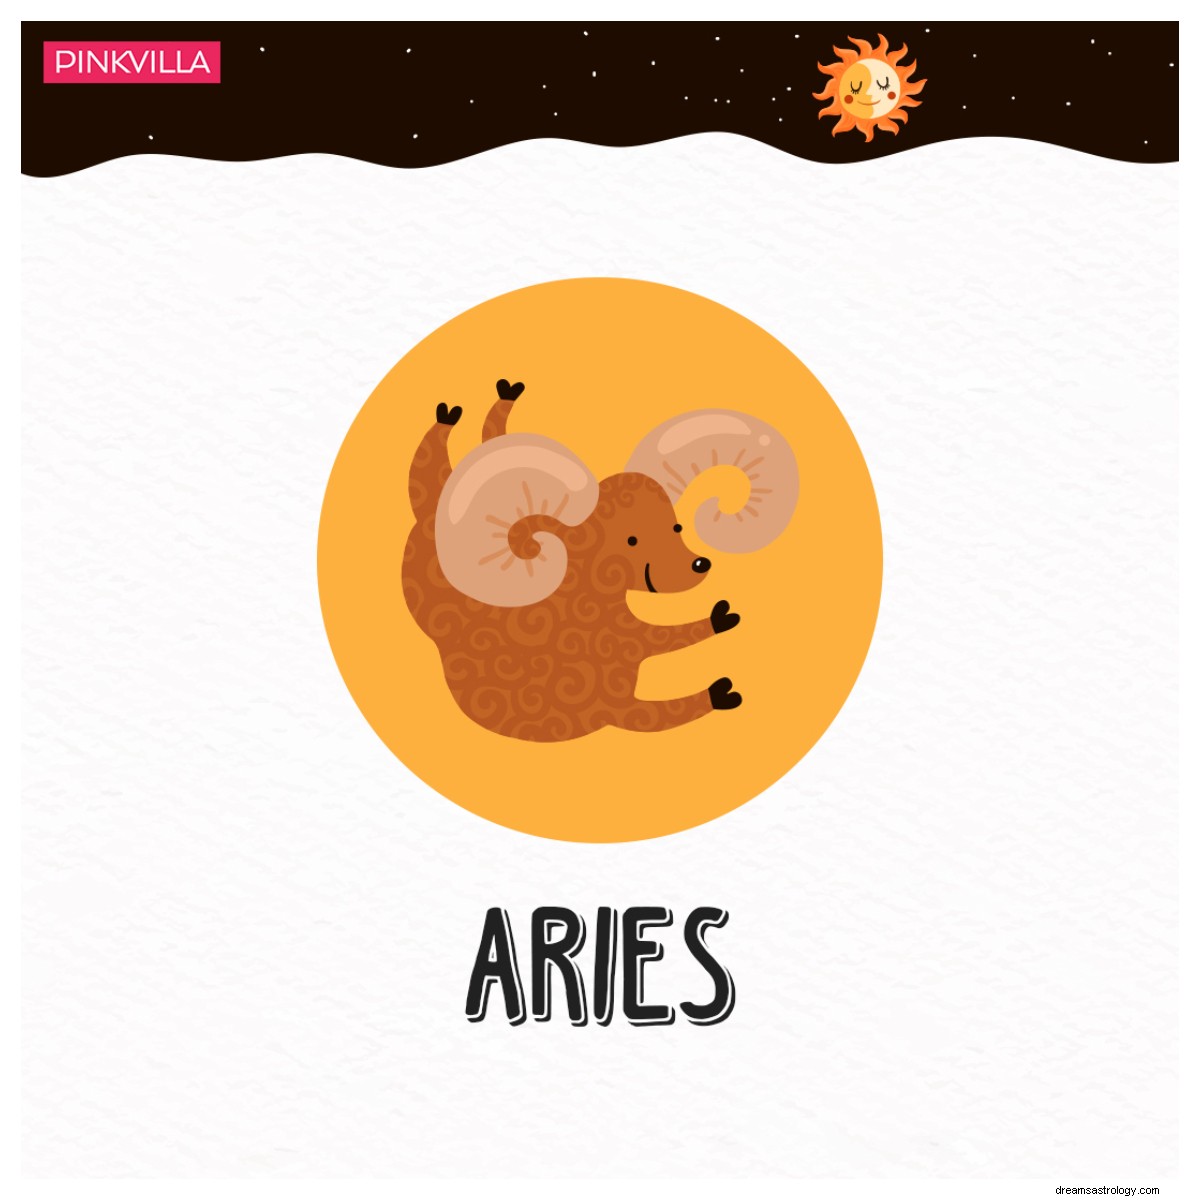 Aries a Virgo:4 signos del zodiaco amantes de la comida que anhelan delicias gastronómicas 